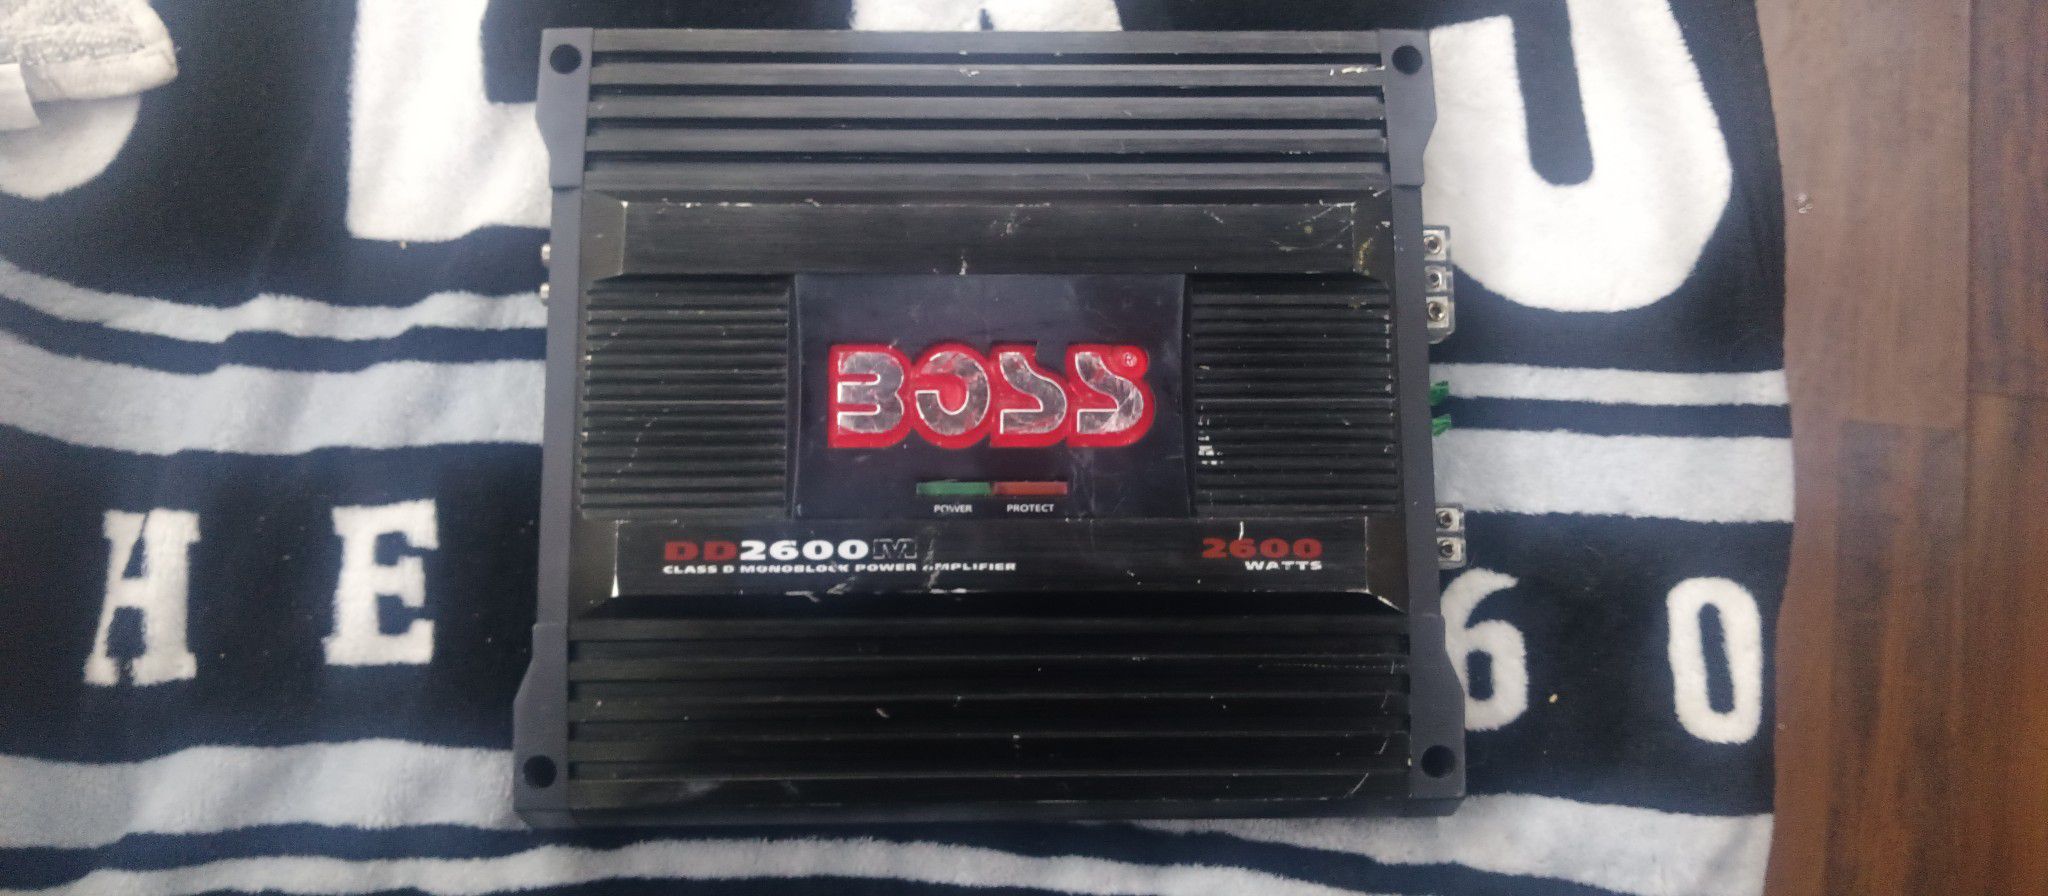 Boss Amplifier 